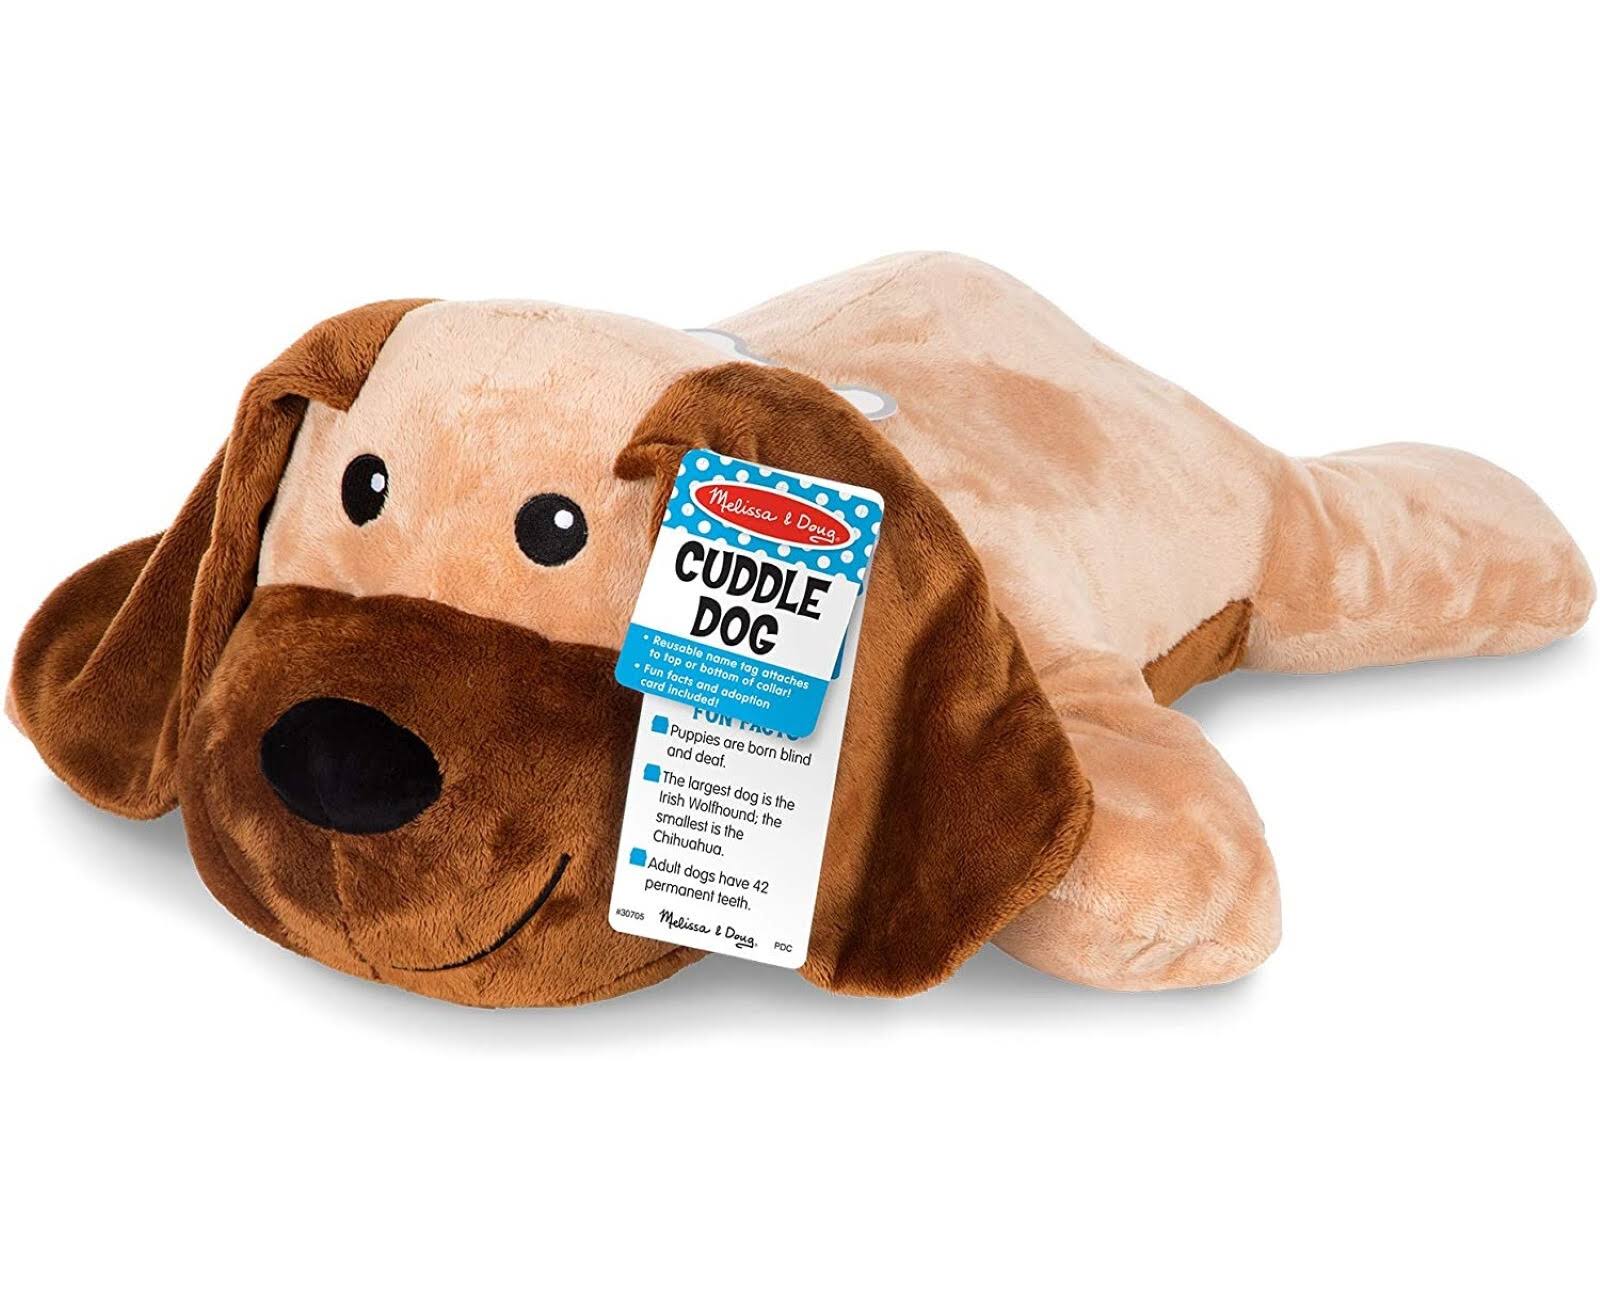 Melissa and Doug Cuddle Dog Stuffed Animal Plush Toy - Jumbo